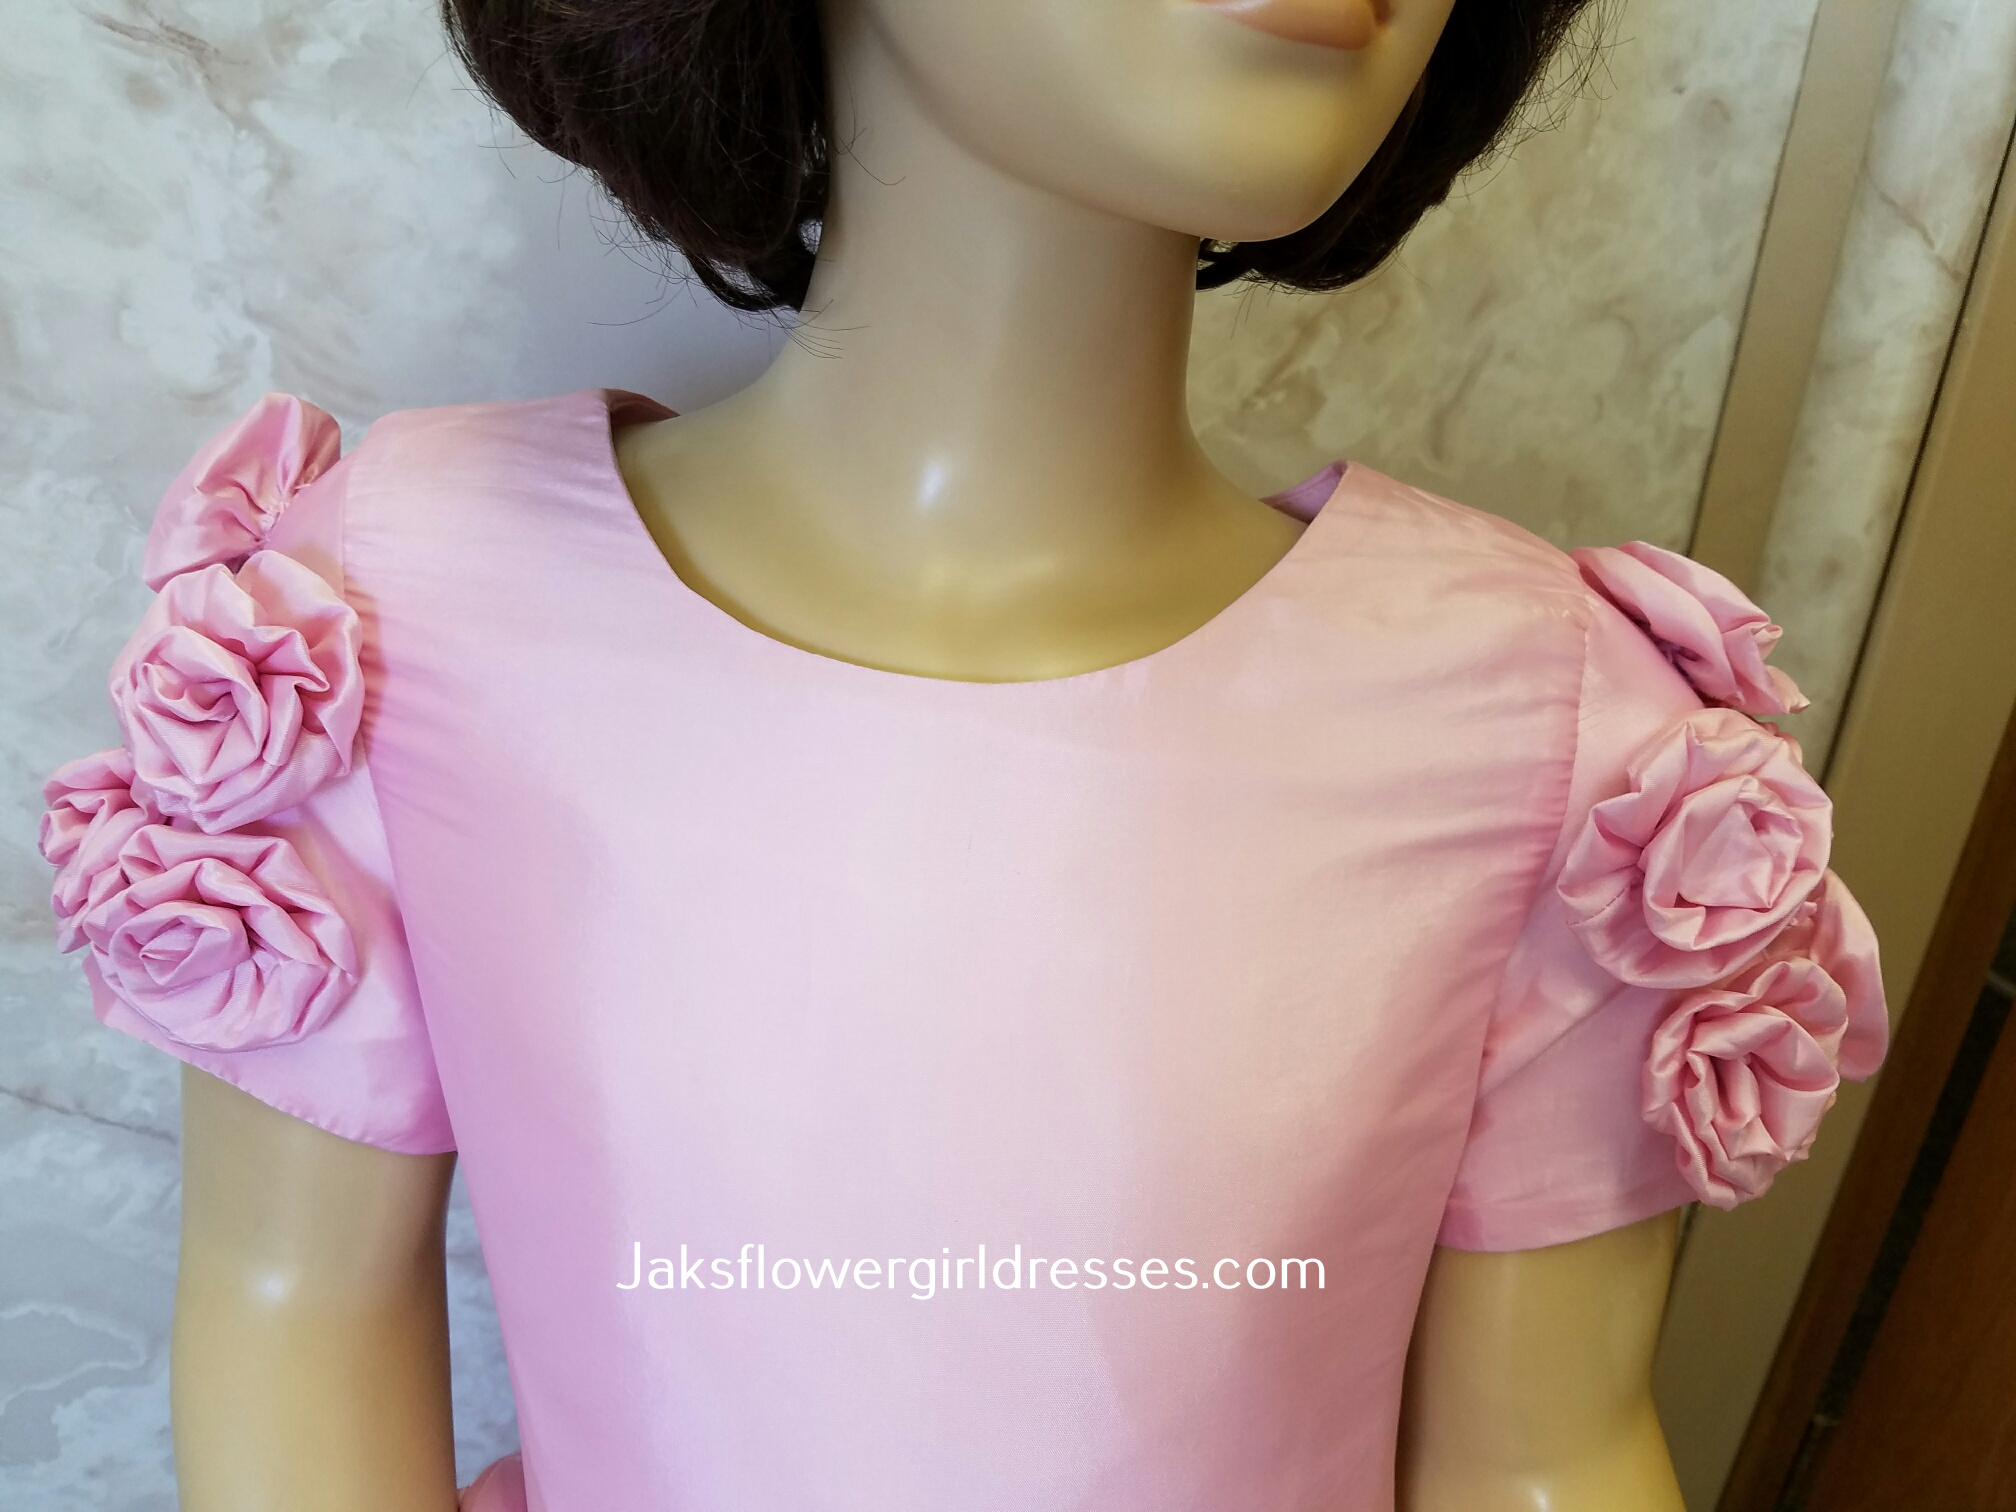 pink princess flower girl dress